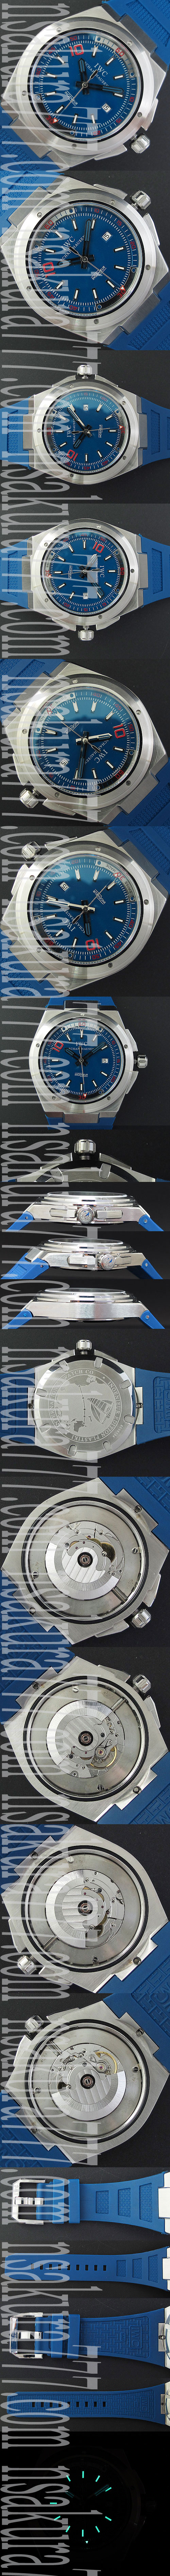 【愛用腕時計】IWC ビッグインヂュニア コピー時計逸品 28800振動 自動巻き 日付表示 ブルーダイヤル